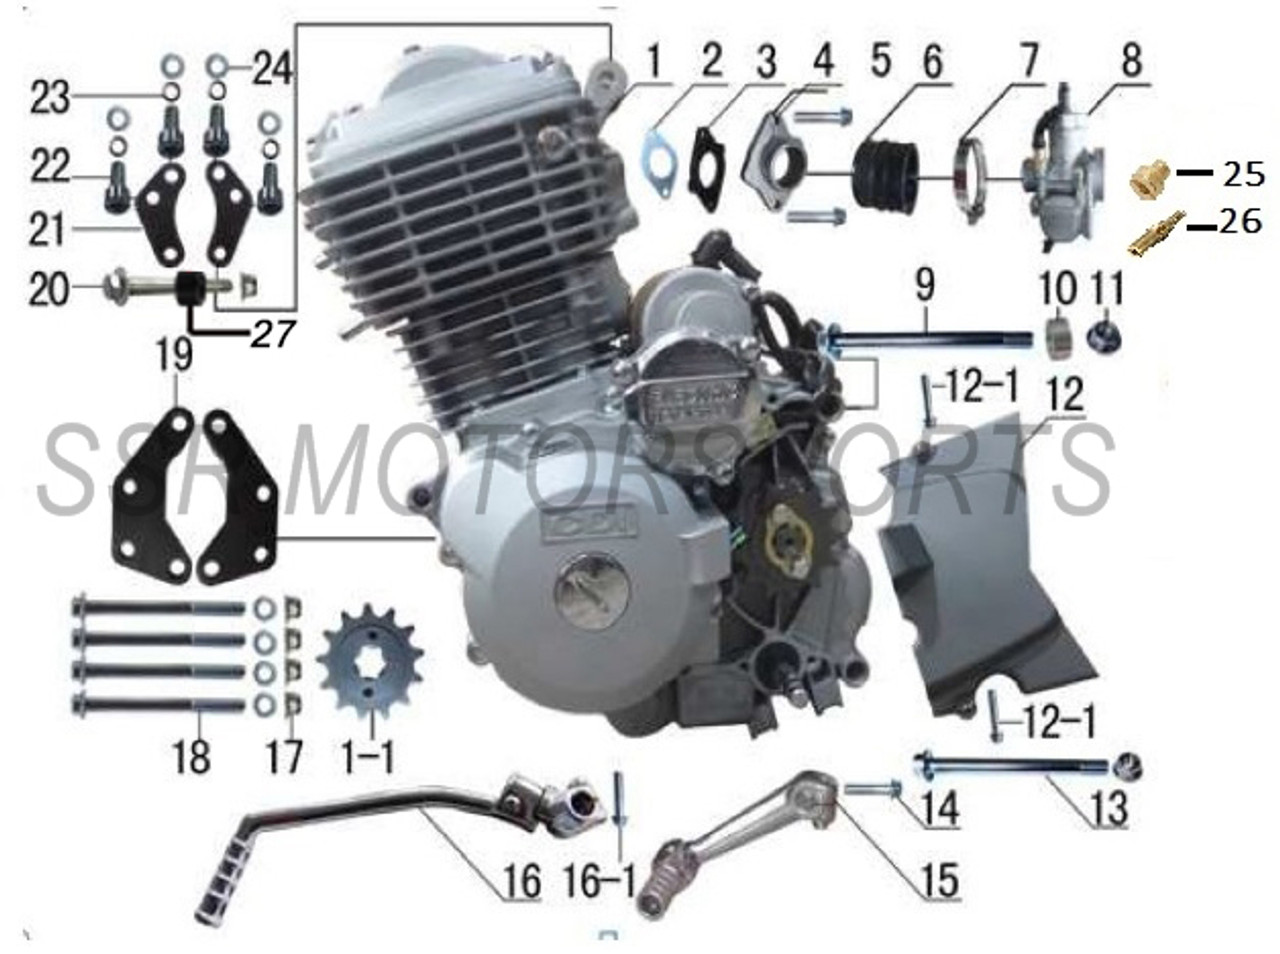 (SR189) Full Engine Parts Schematics